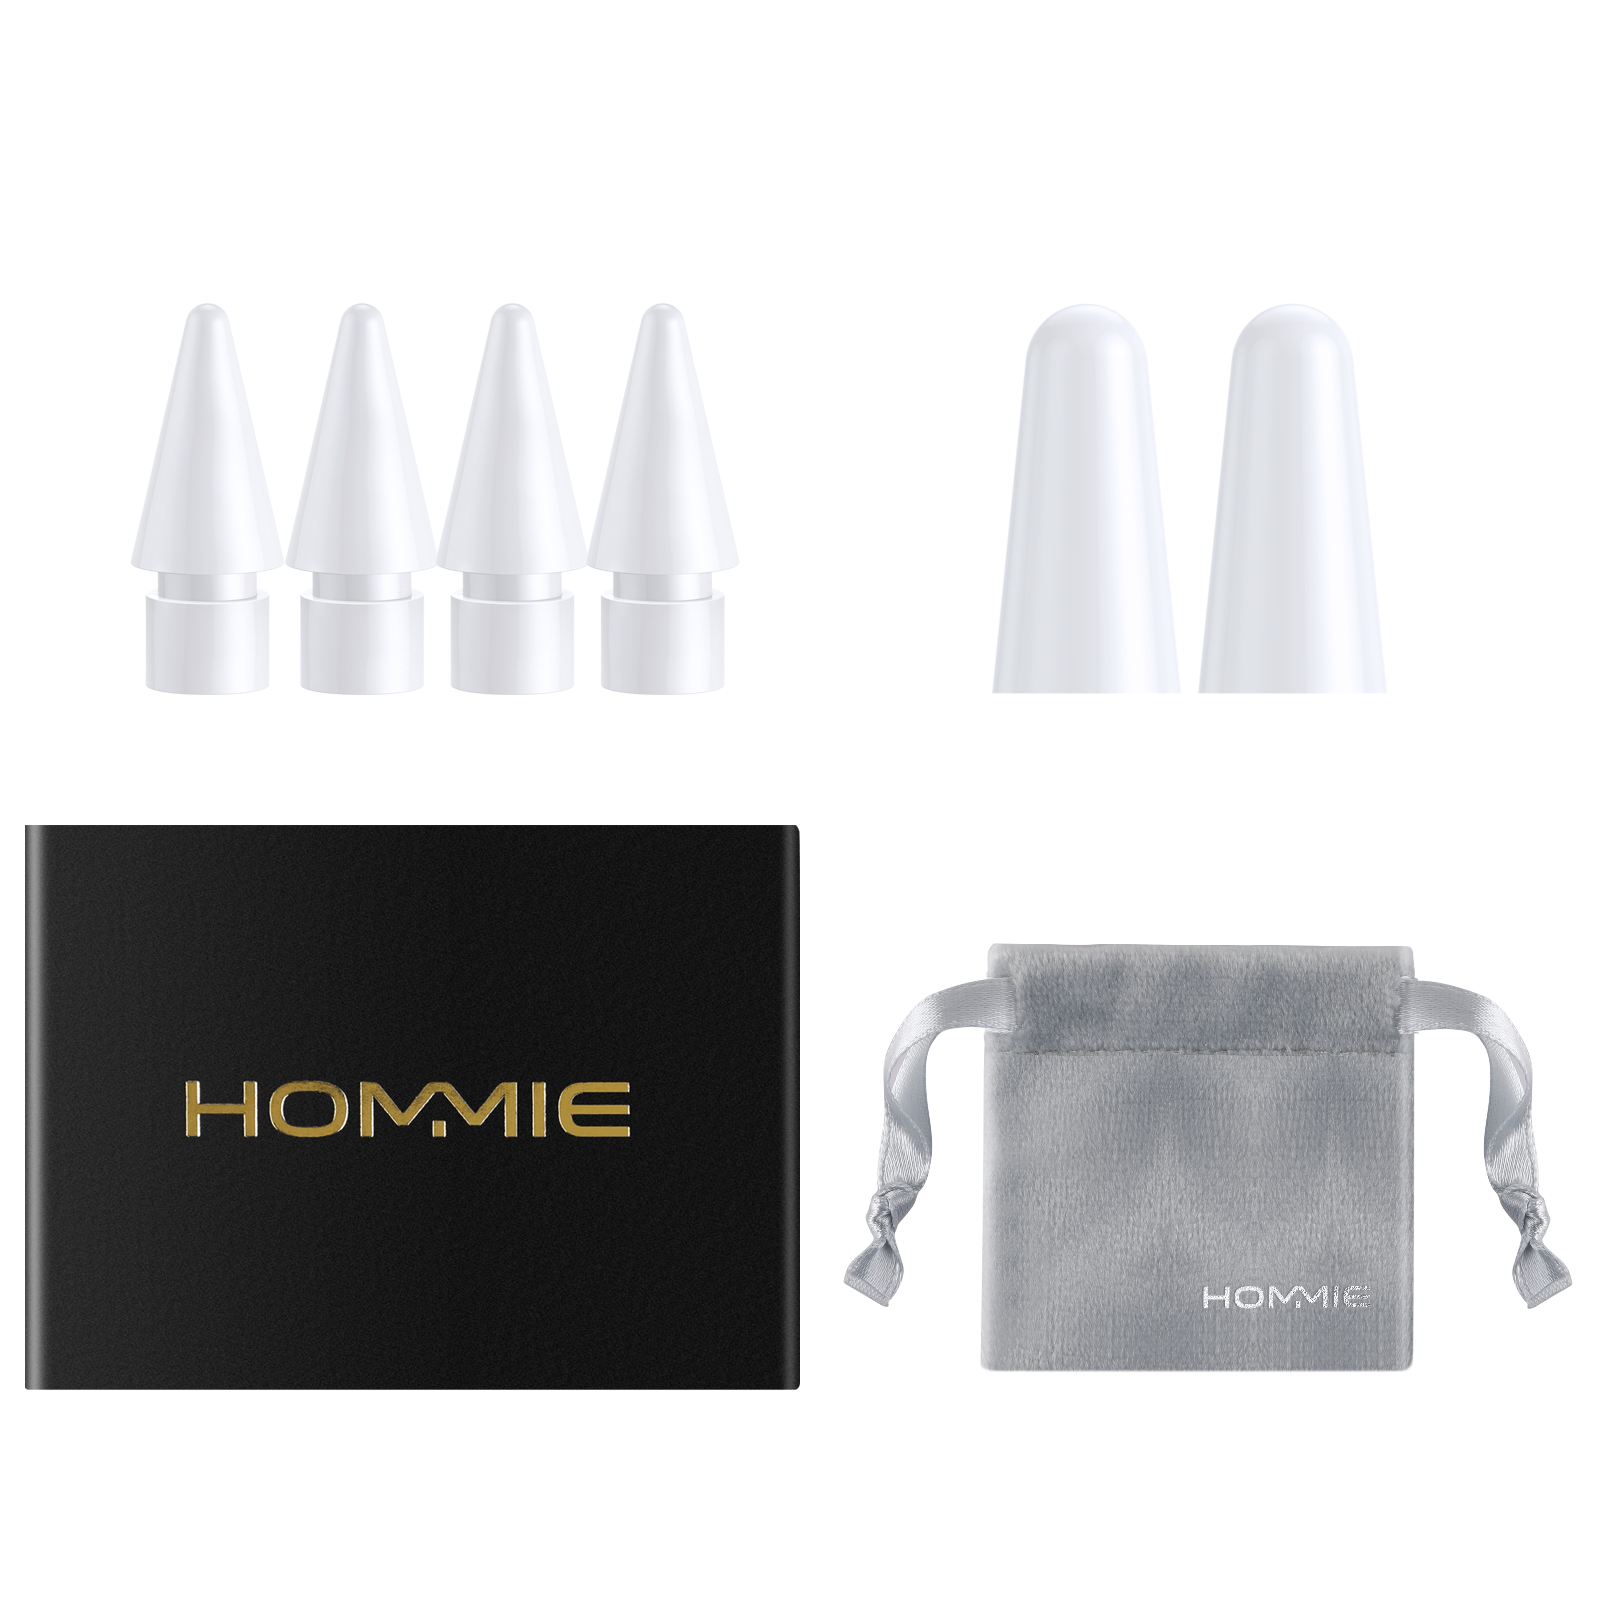 Blanco Puntas de Recambio para Lapiz Hommie 5 Pack Hommie Puntas Repuestable para Lápiz iPad de Hommie 